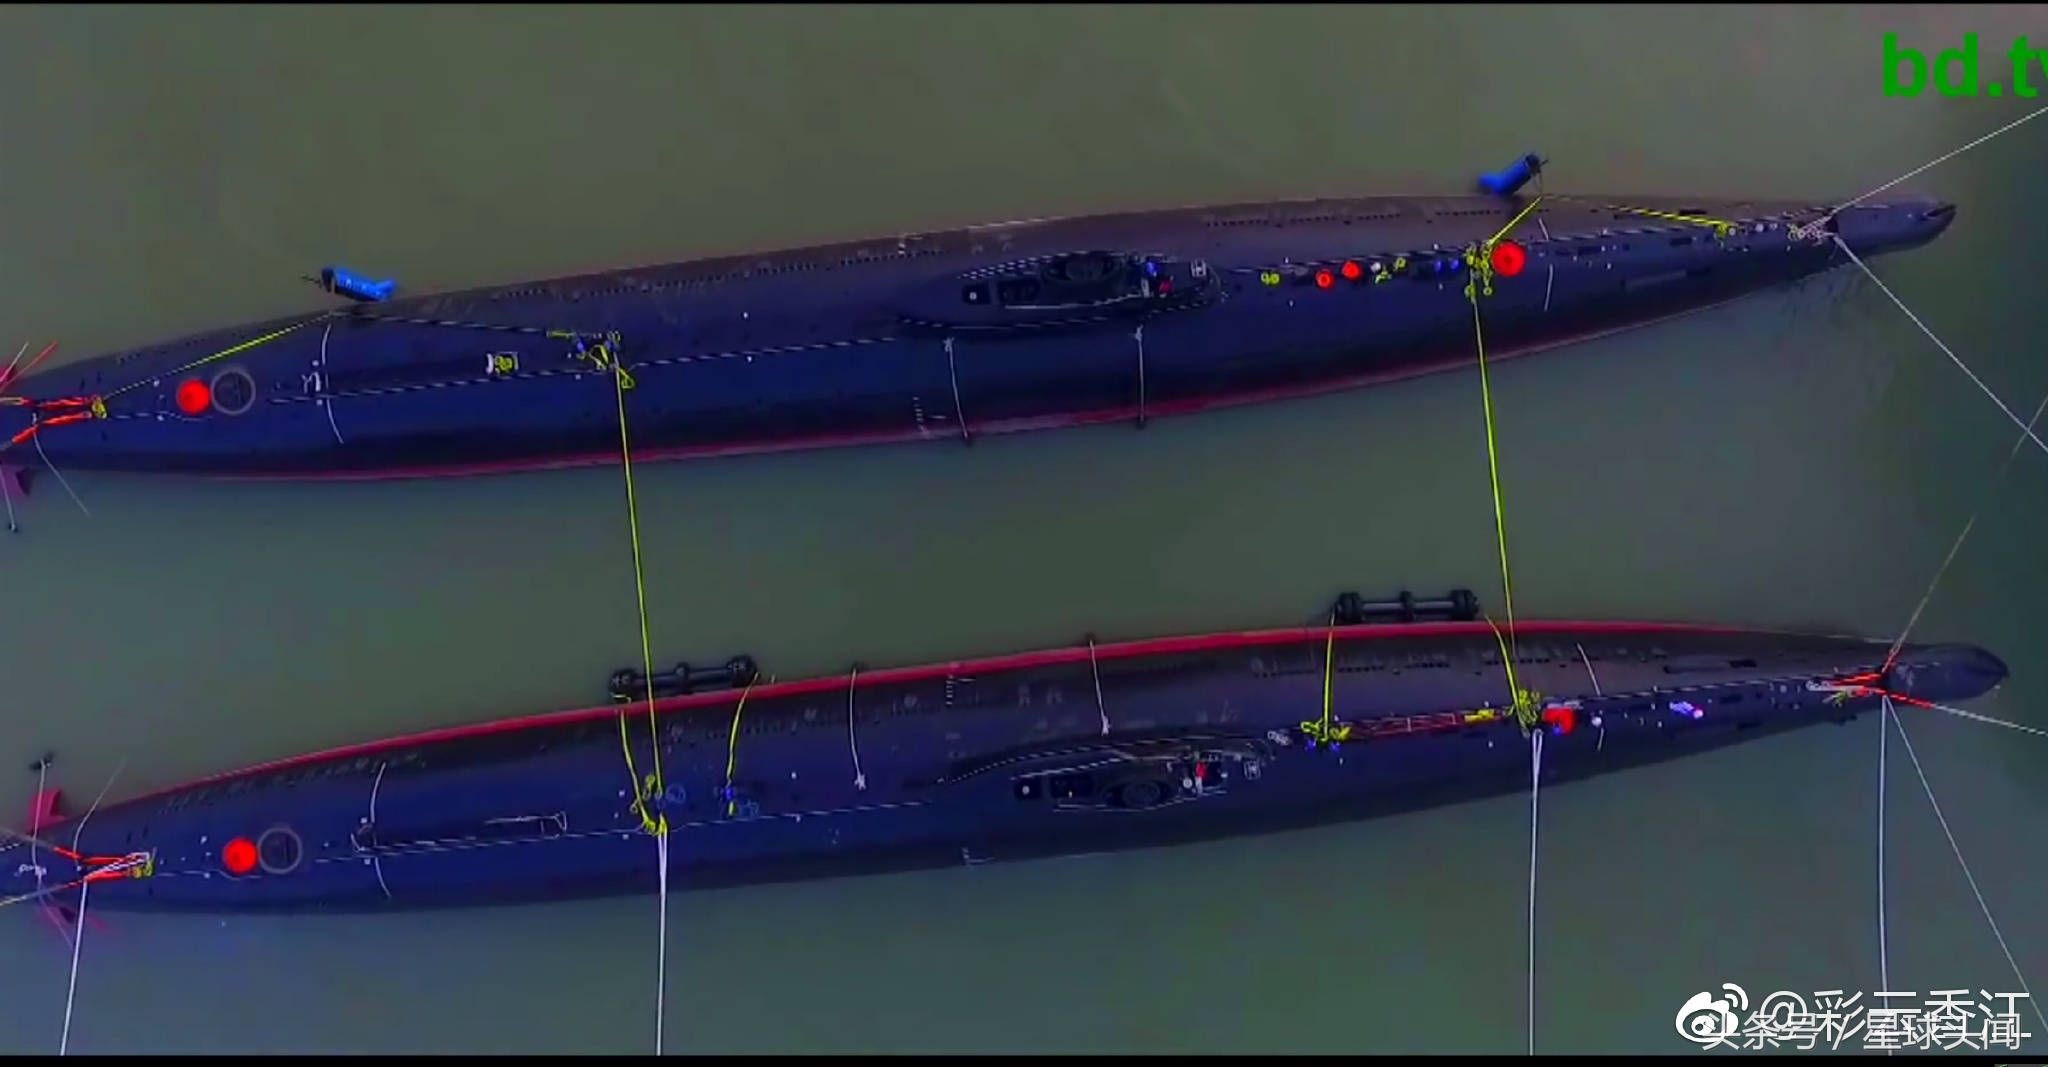 我国去年曾交付孟加拉国两艘035g级潜艇,国际上称呼为"明"级潜艇.